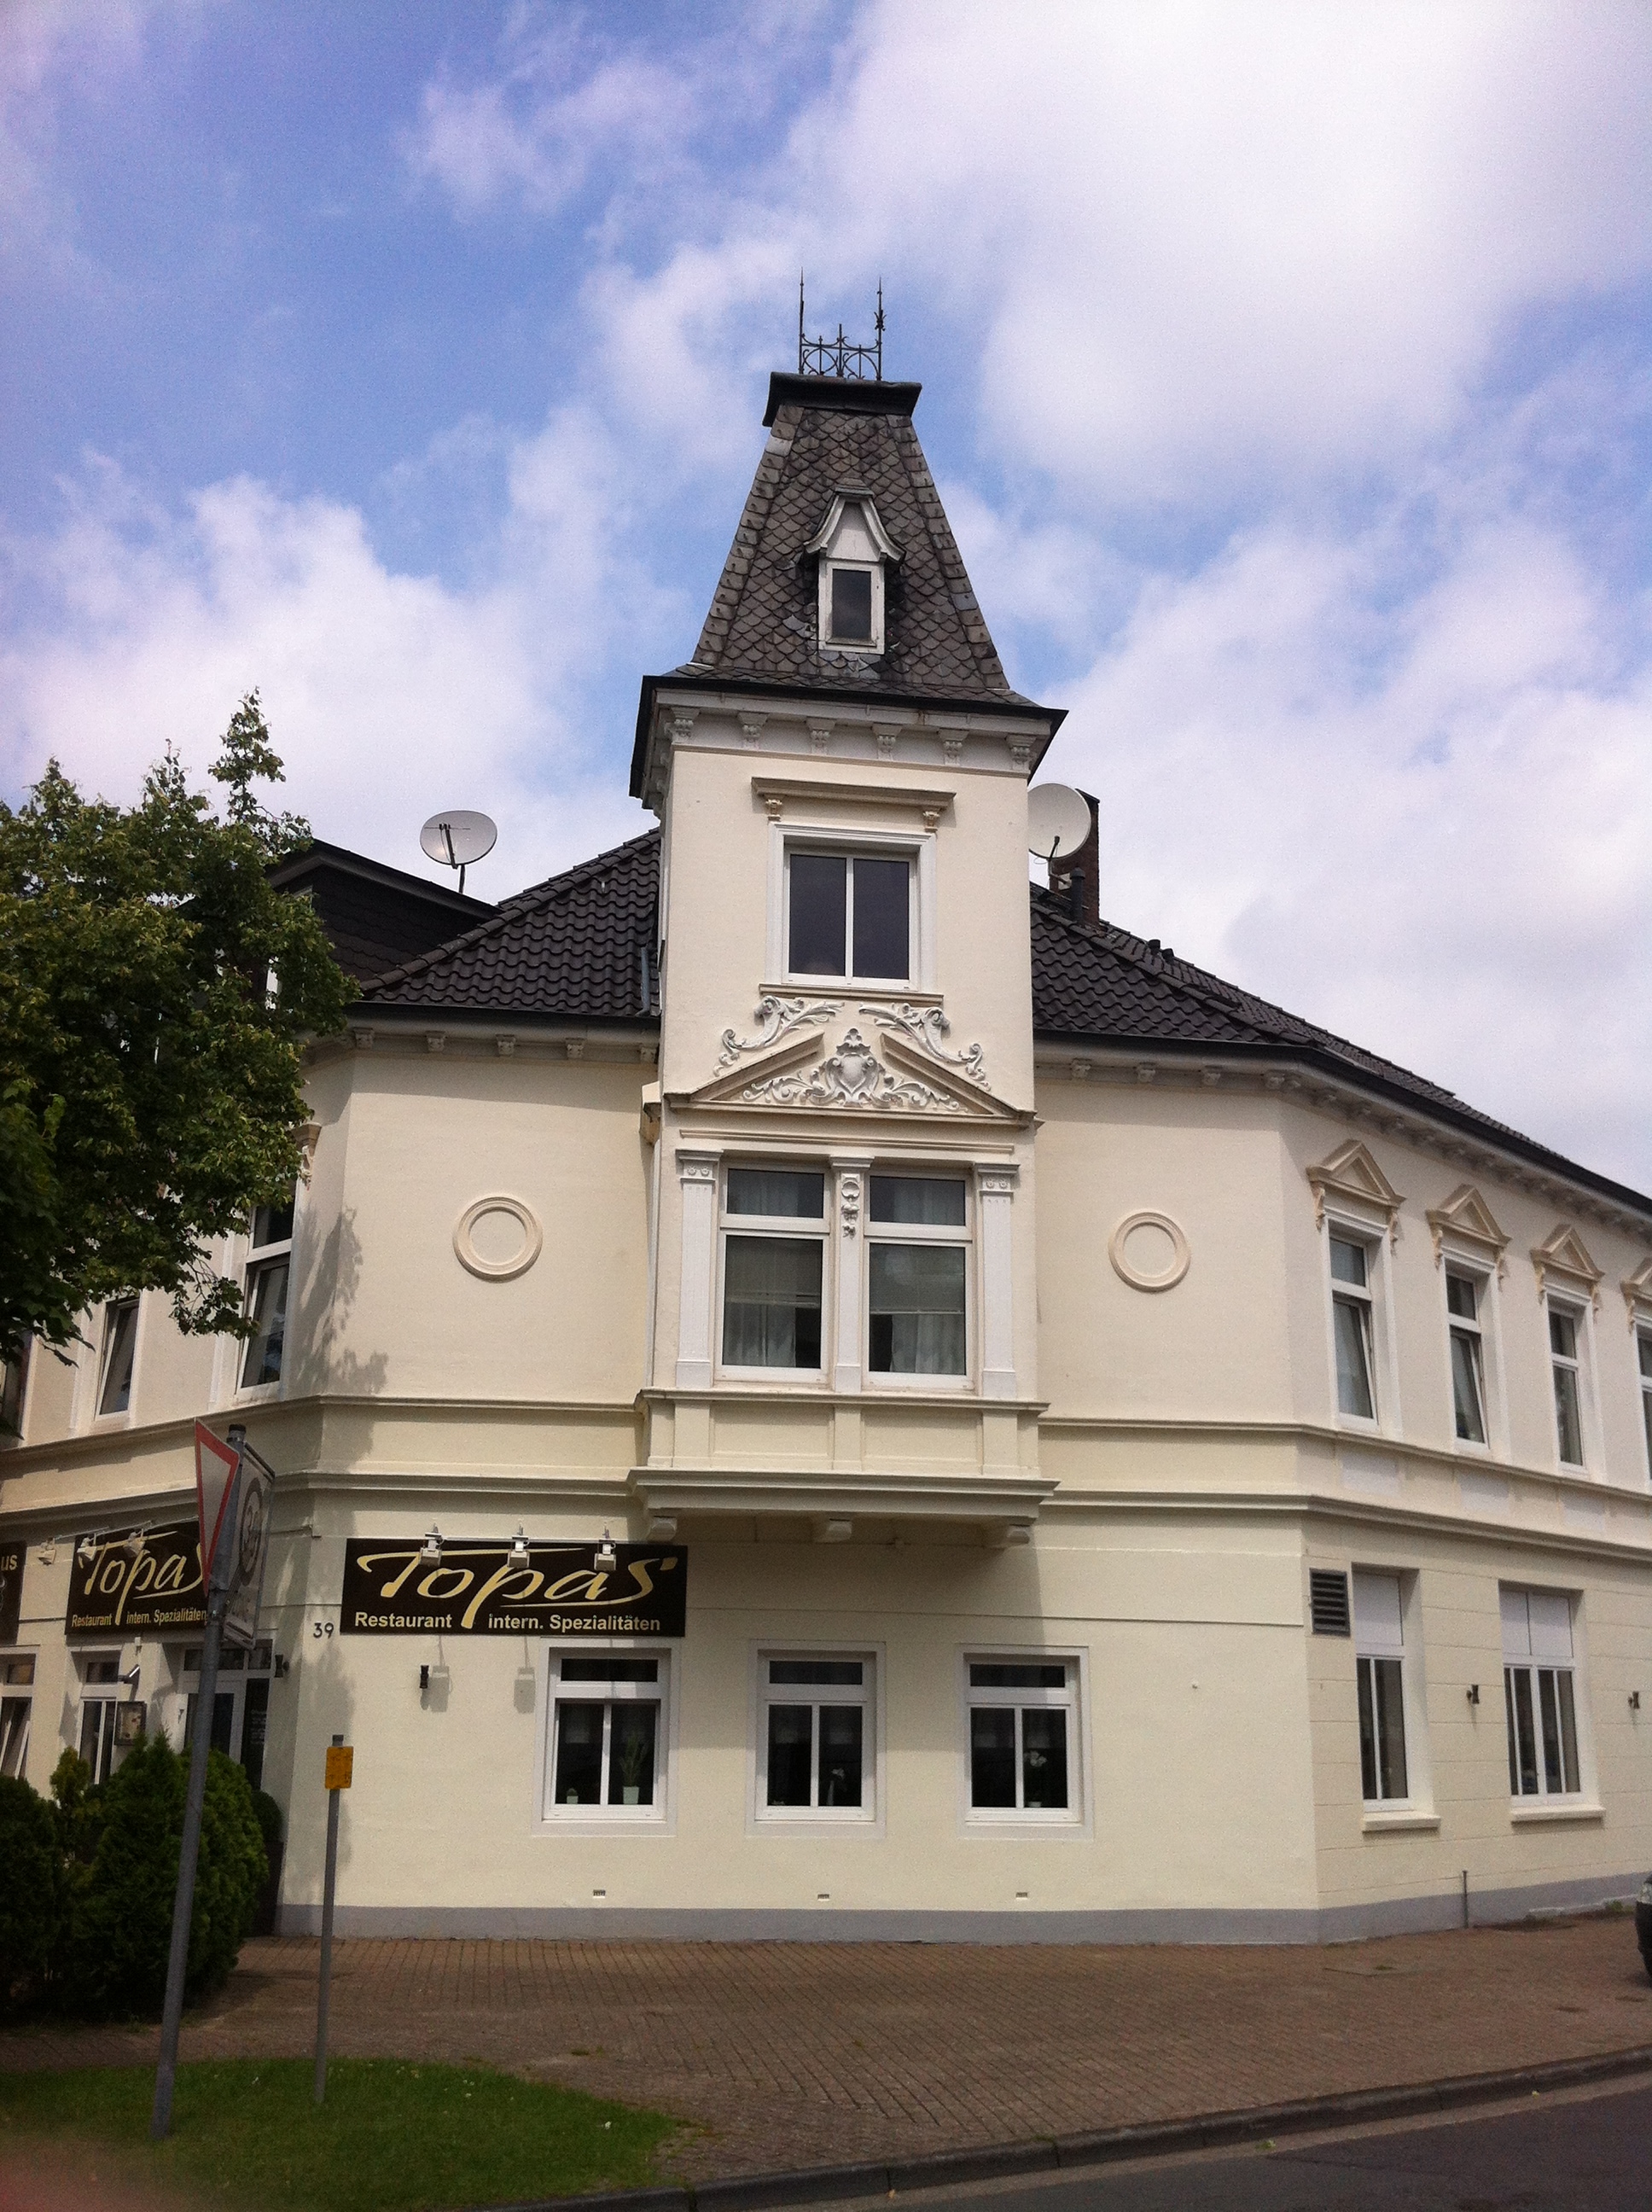 Topas Restaurant in Oldenburg Osternburg